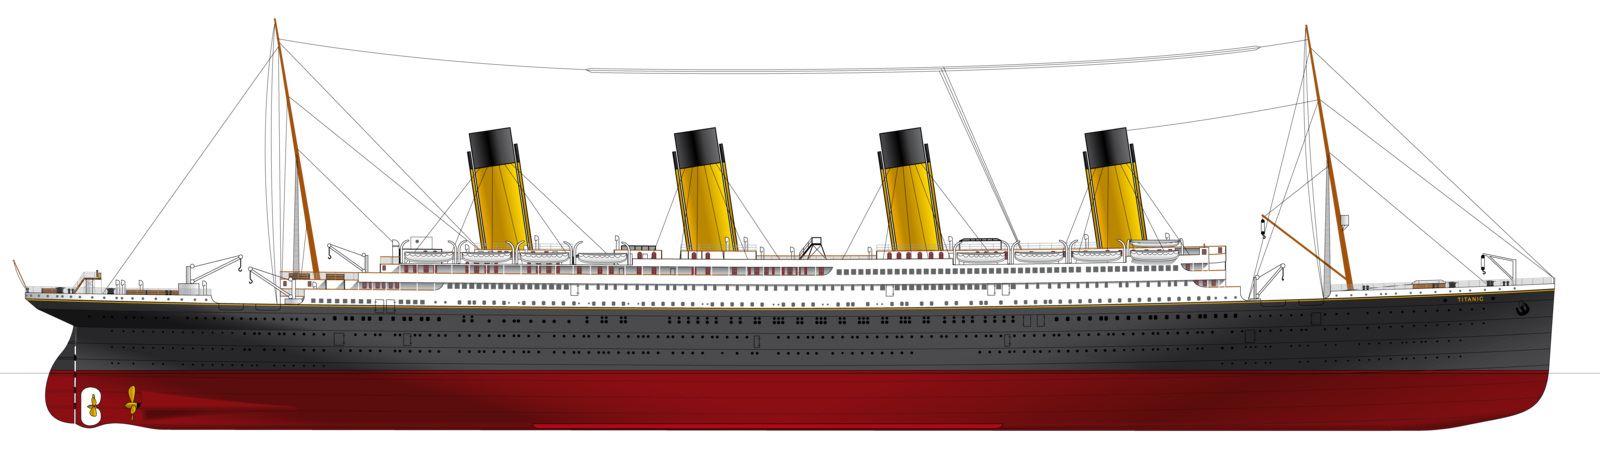 Titanic PNG CUPTOUT.